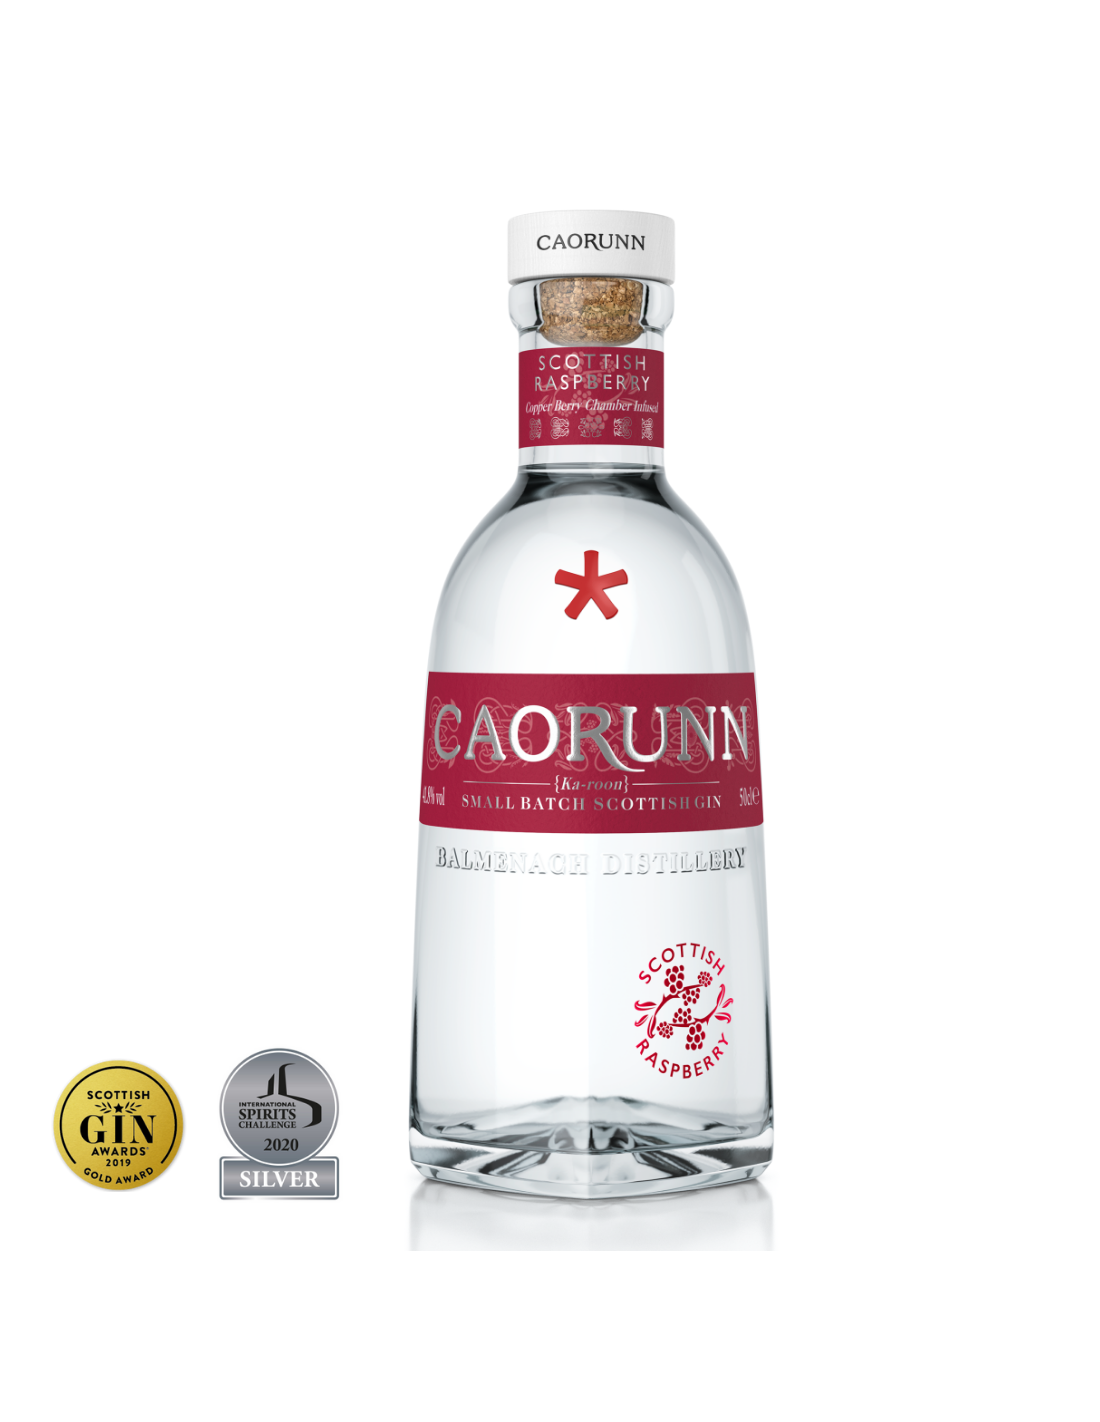 Gin Caorunn Raspberry, 41.8% alc., 0.5L, Scotia alcooldiscount.ro